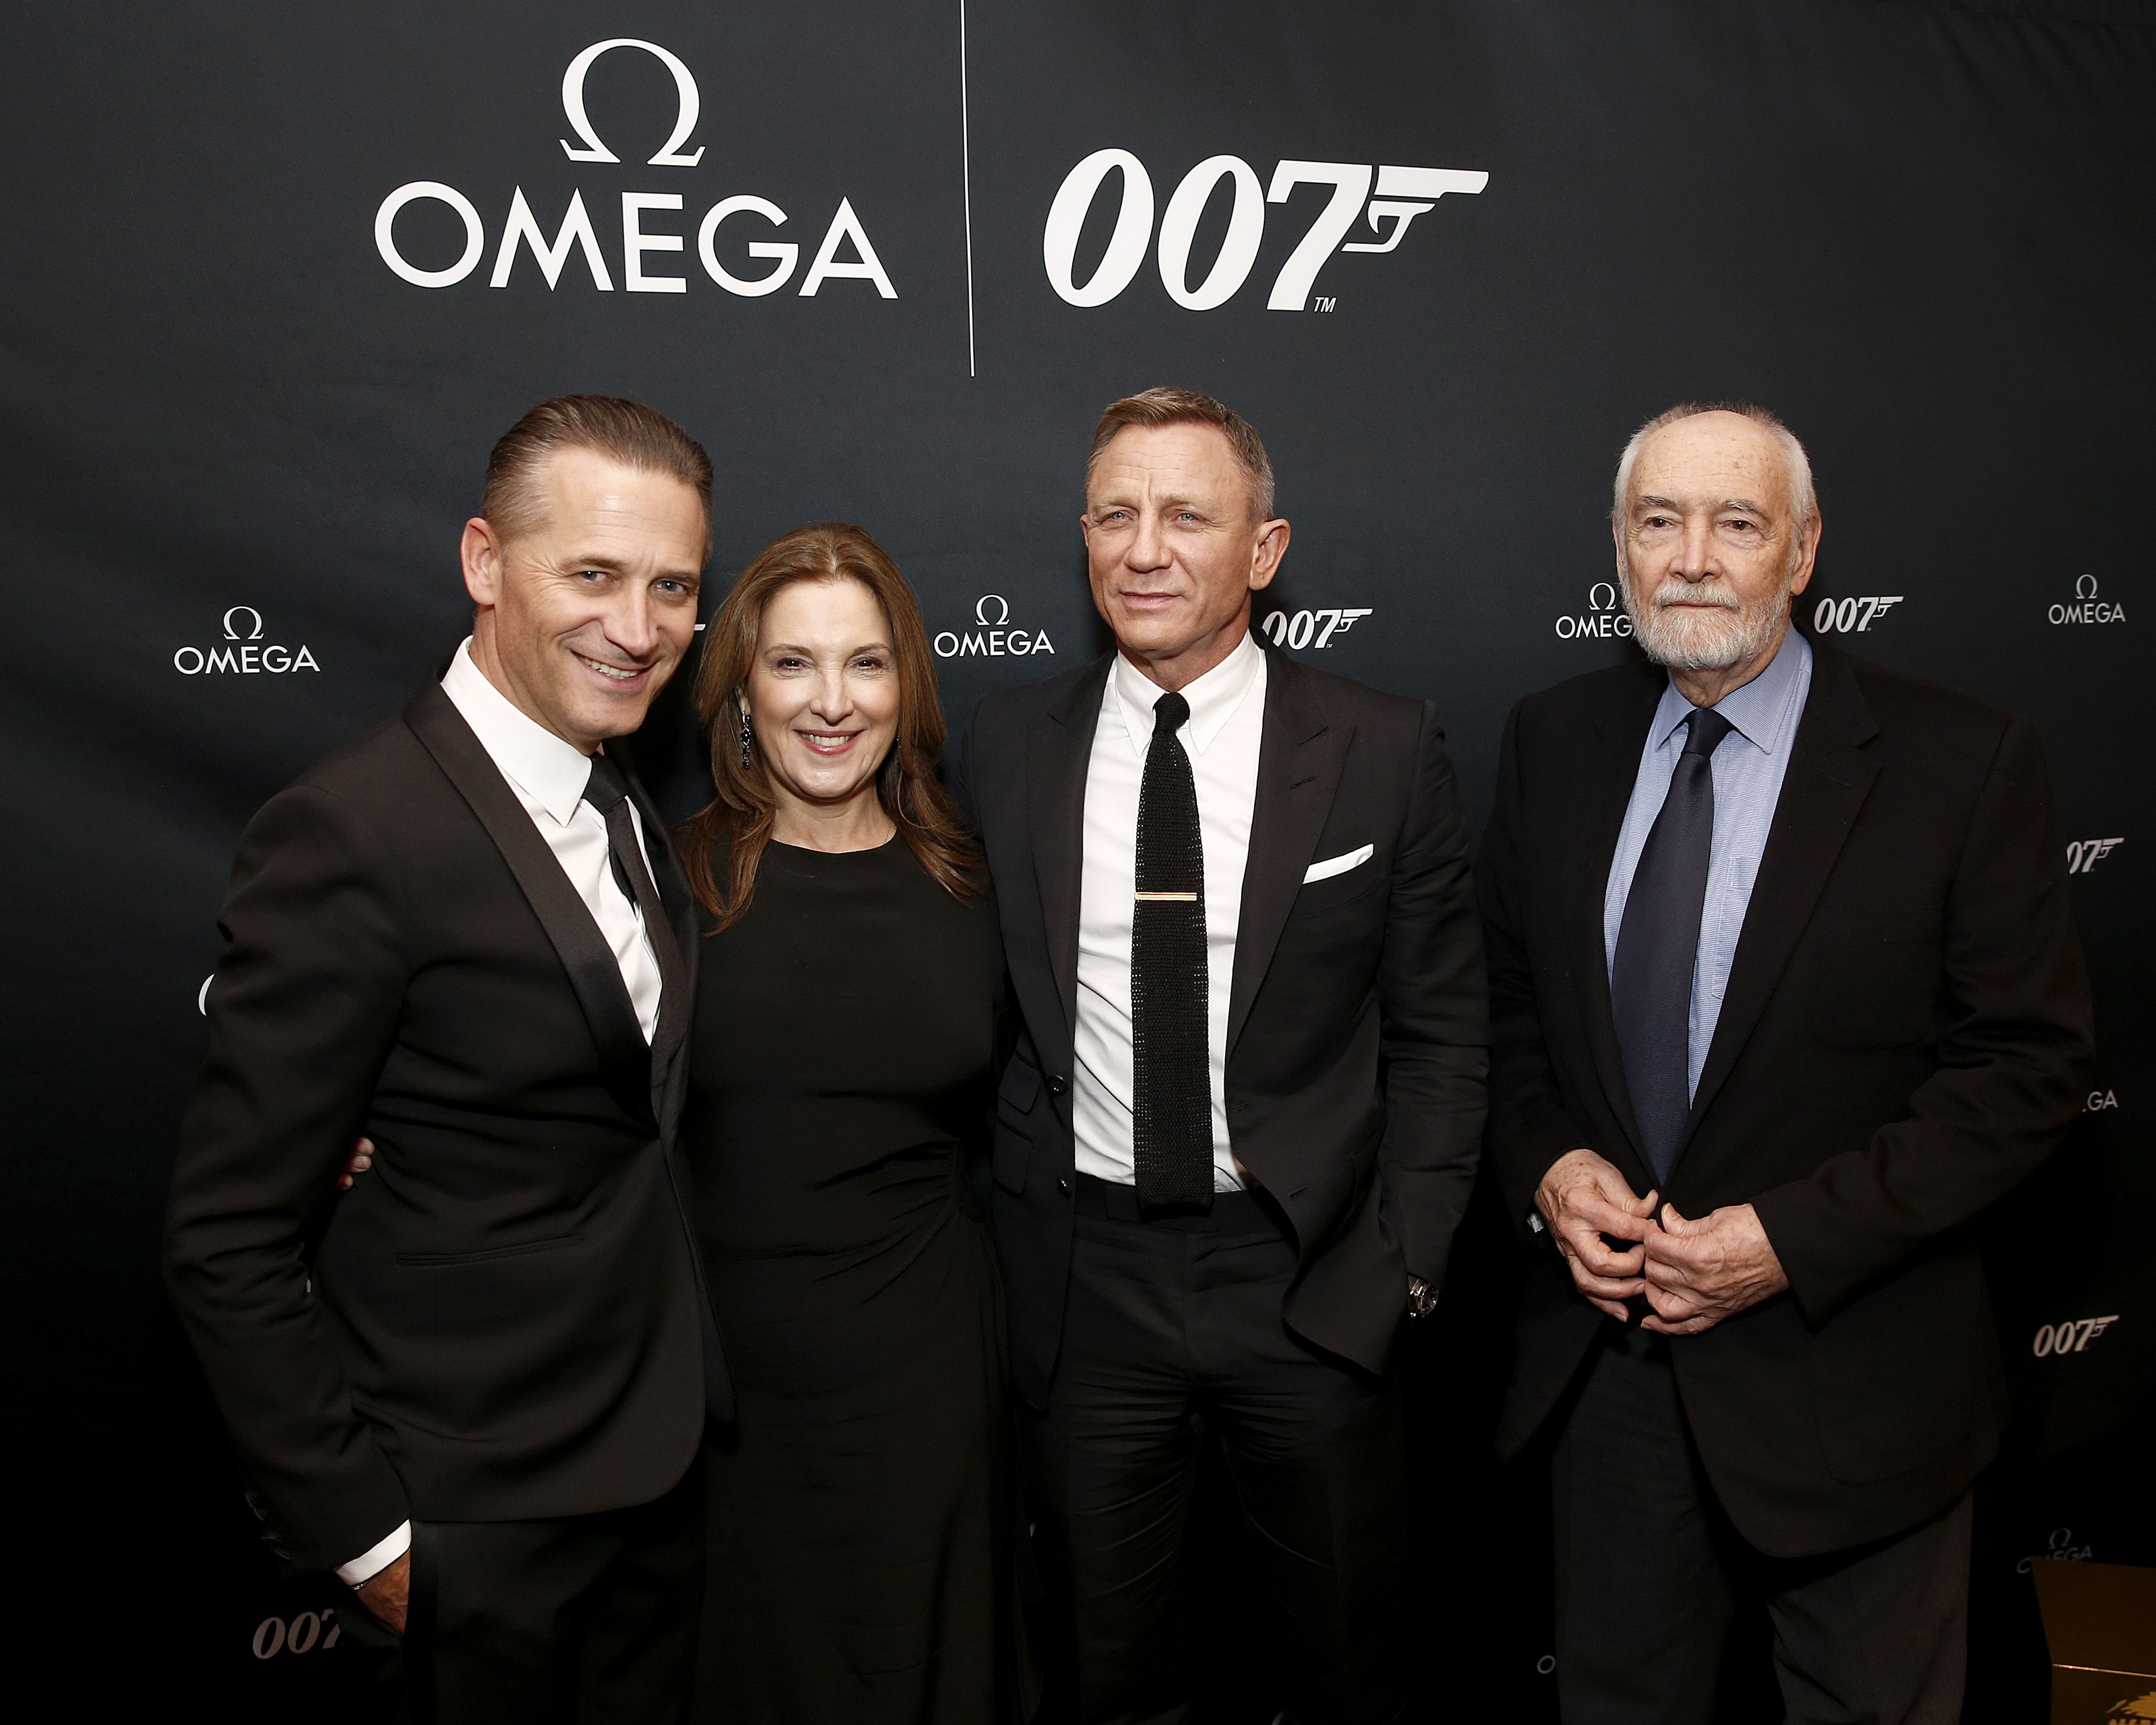 James Bond Spectre Suits For Men